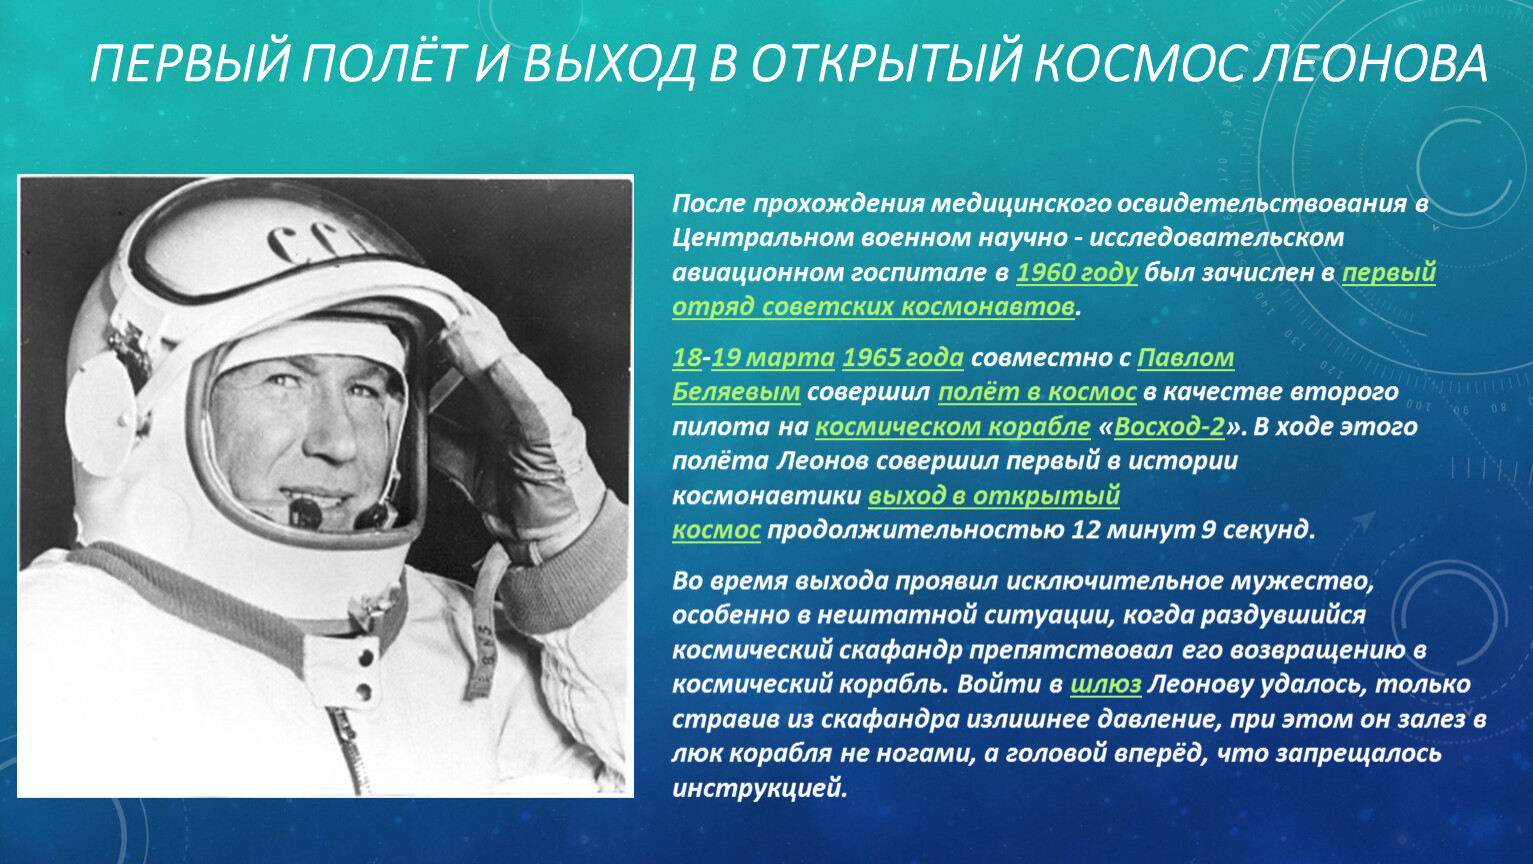 Какая страна была первым в космосе. Леонов космонавт первый полет.